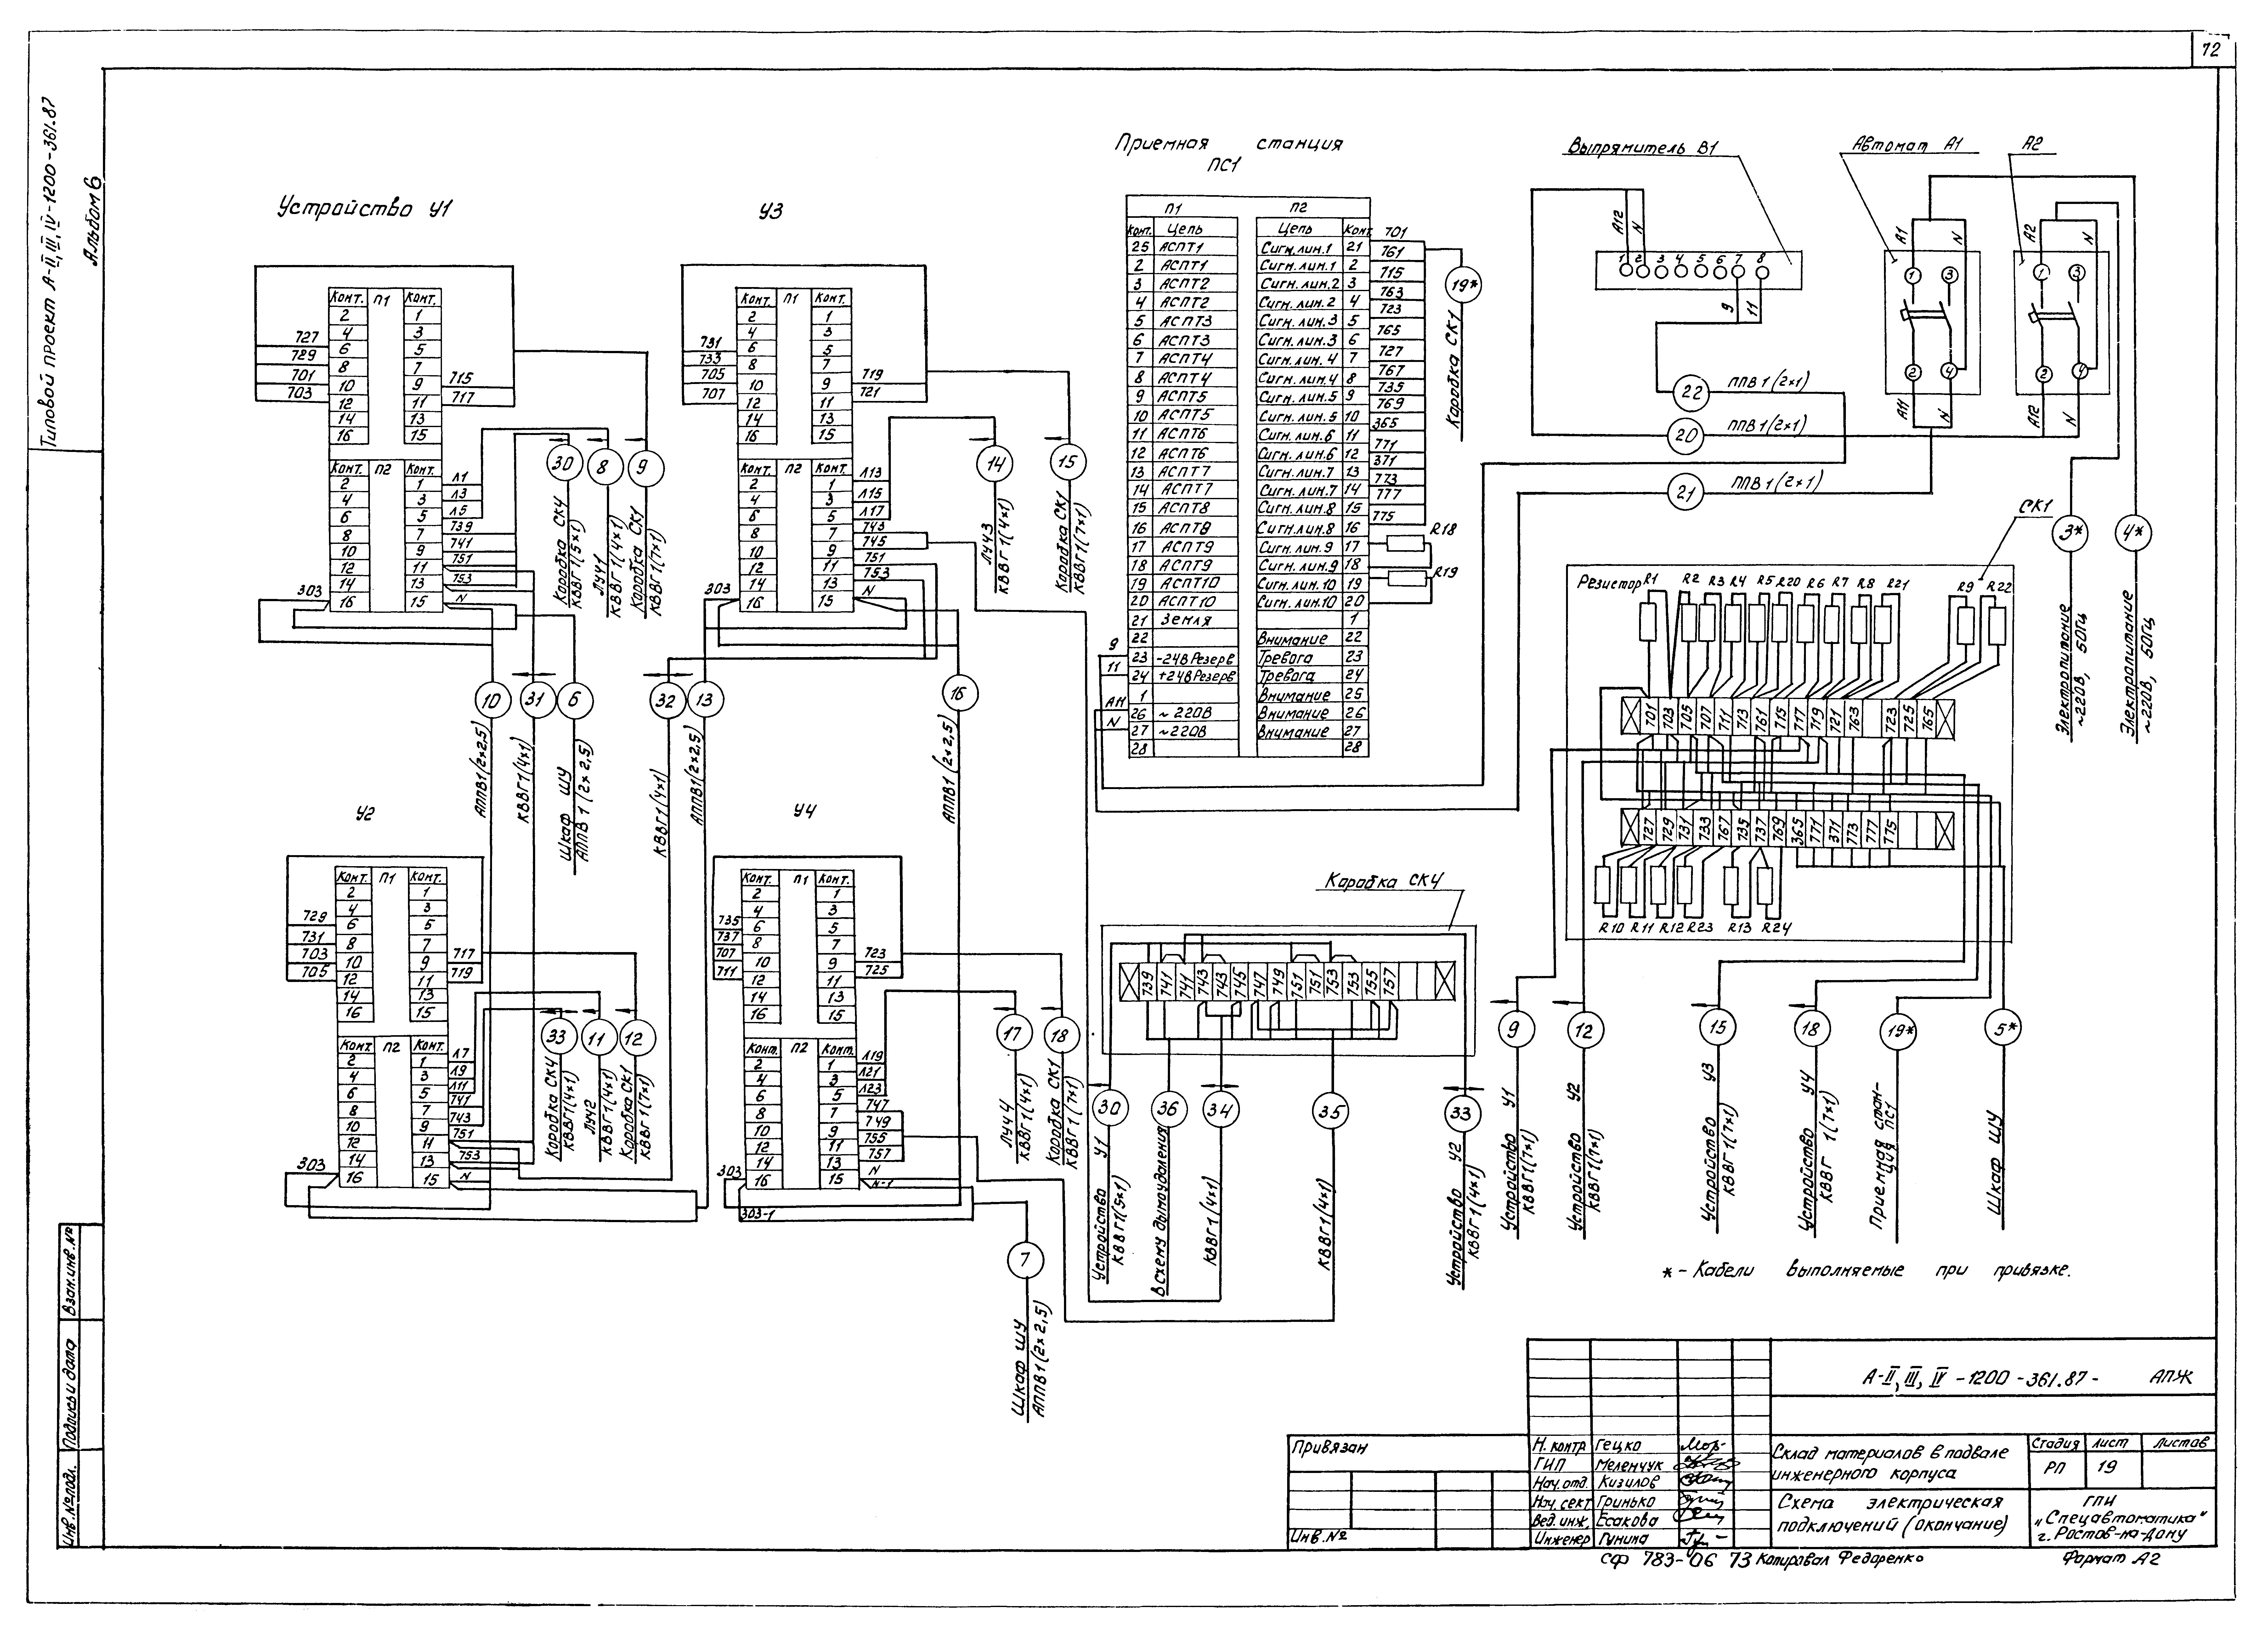 Типовой проект А-II,III,IV-1200-362.87